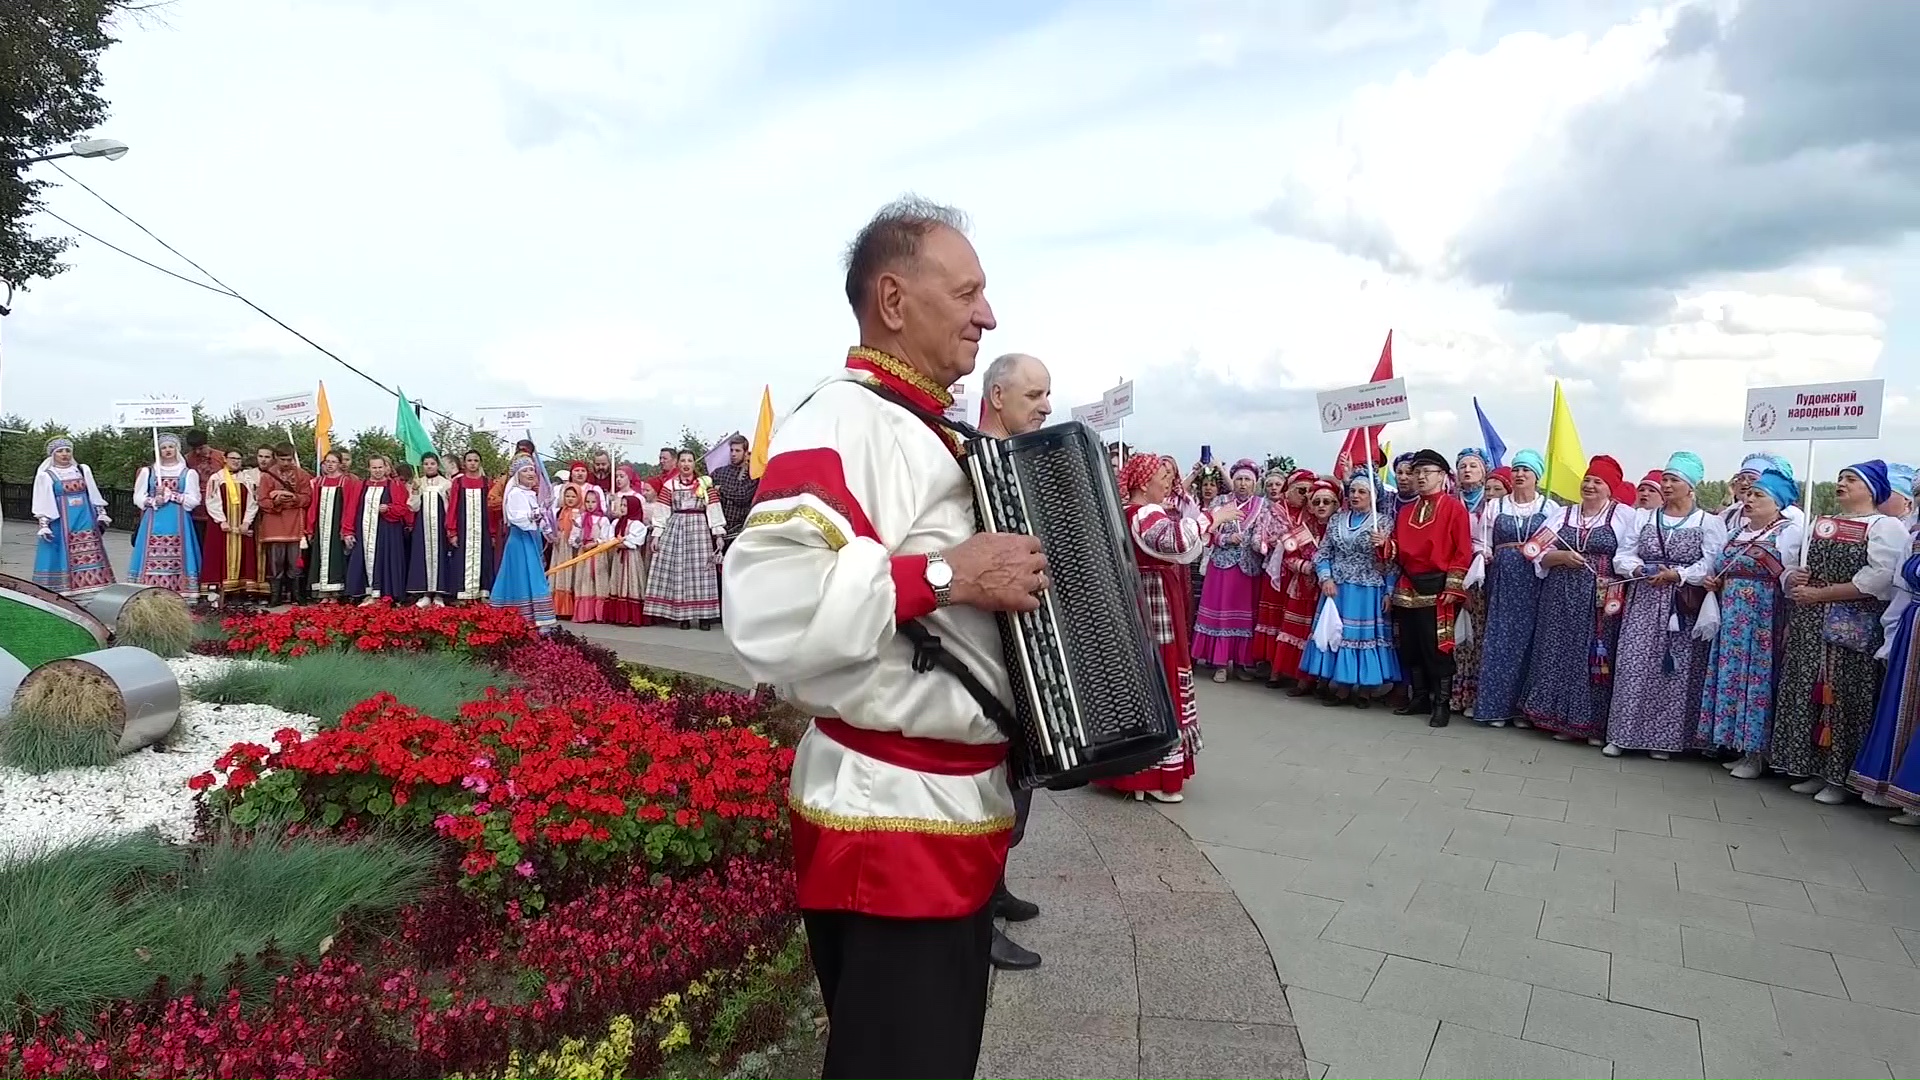 Песни о родине, жизни и любви: по Ярославлю прошел целый парад народных хоров